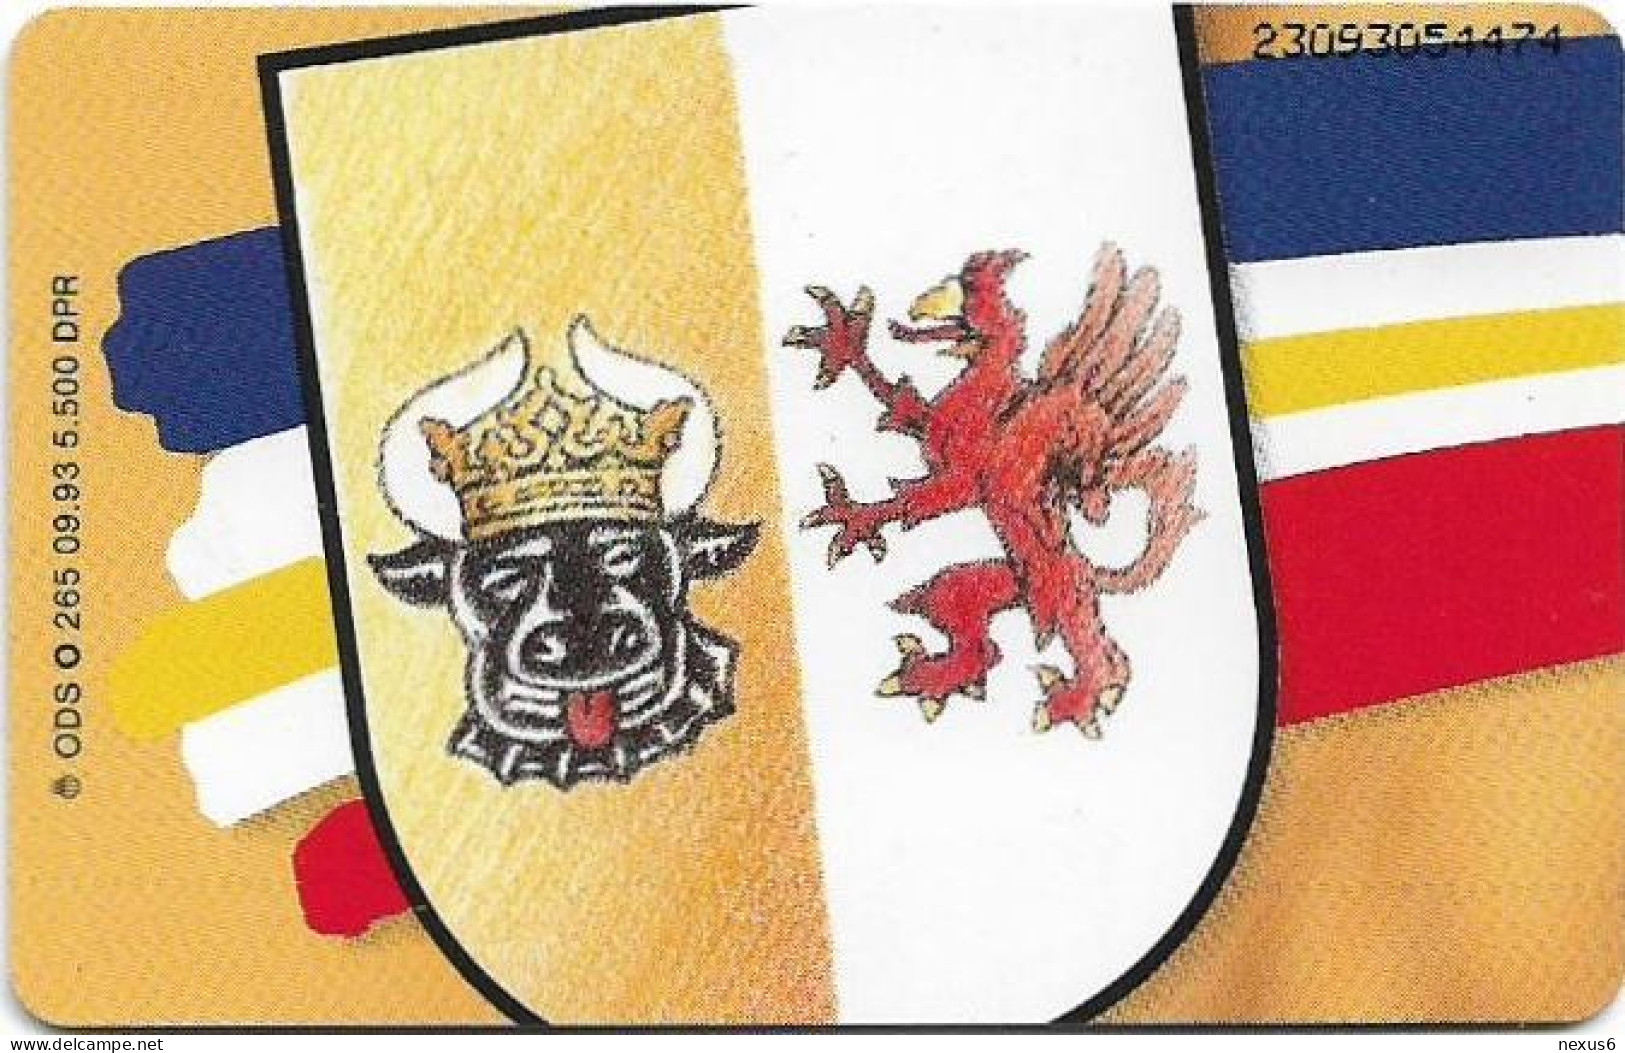 Germany - Wappen Der BRD - Mecklenburg-Vorpommern - O 0265 - 09.1993, 6DM, 5.500ex, Mint - O-Series: Kundenserie Vom Sammlerservice Ausgeschlossen